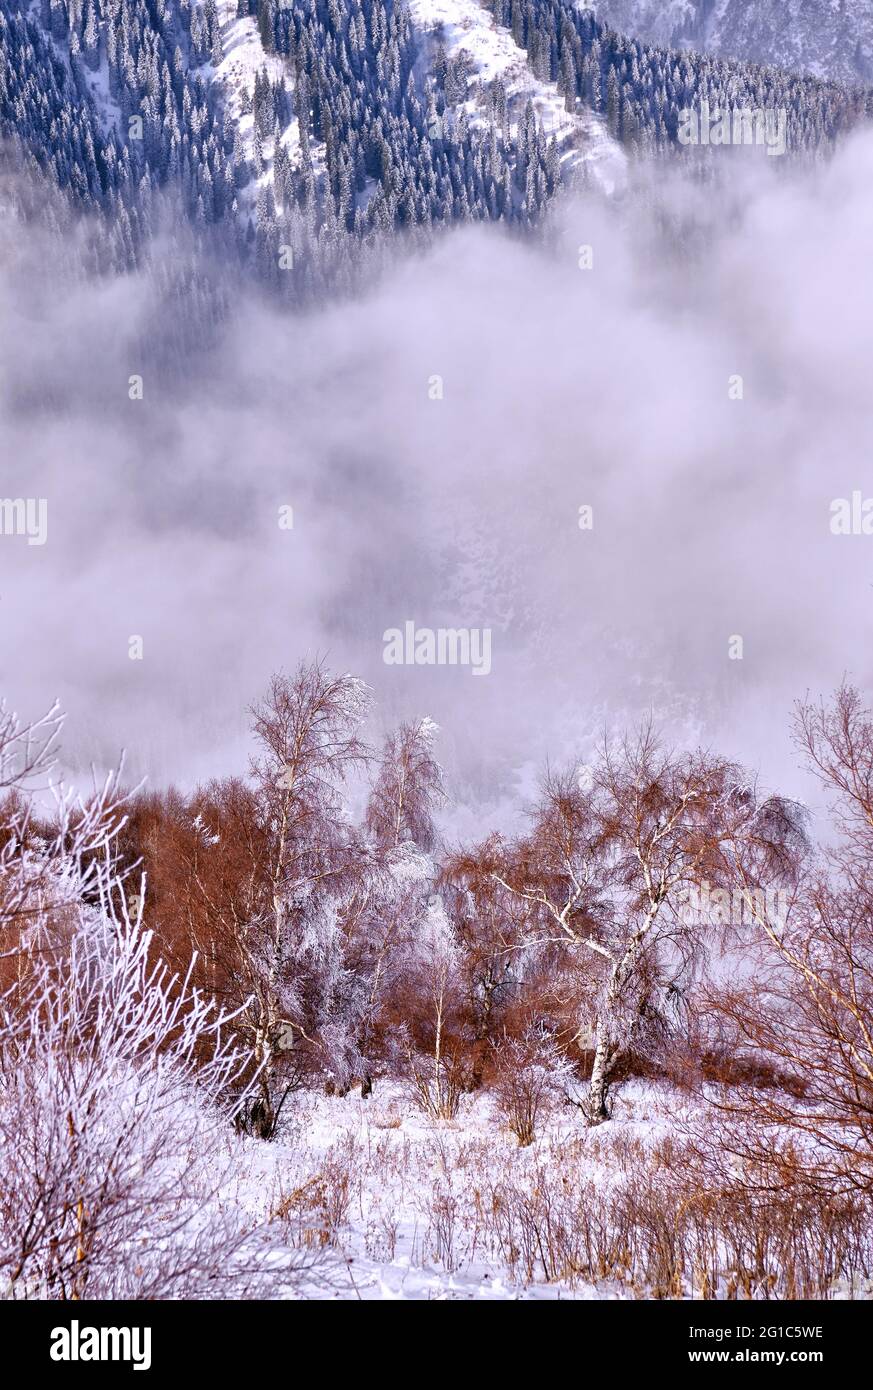 Le matin, il y a du givre blanc et de la neige sur les branches d'arbres dans les montagnes, sur fond de sapins enneigés; concept de conte de fées d'hiver Banque D'Images